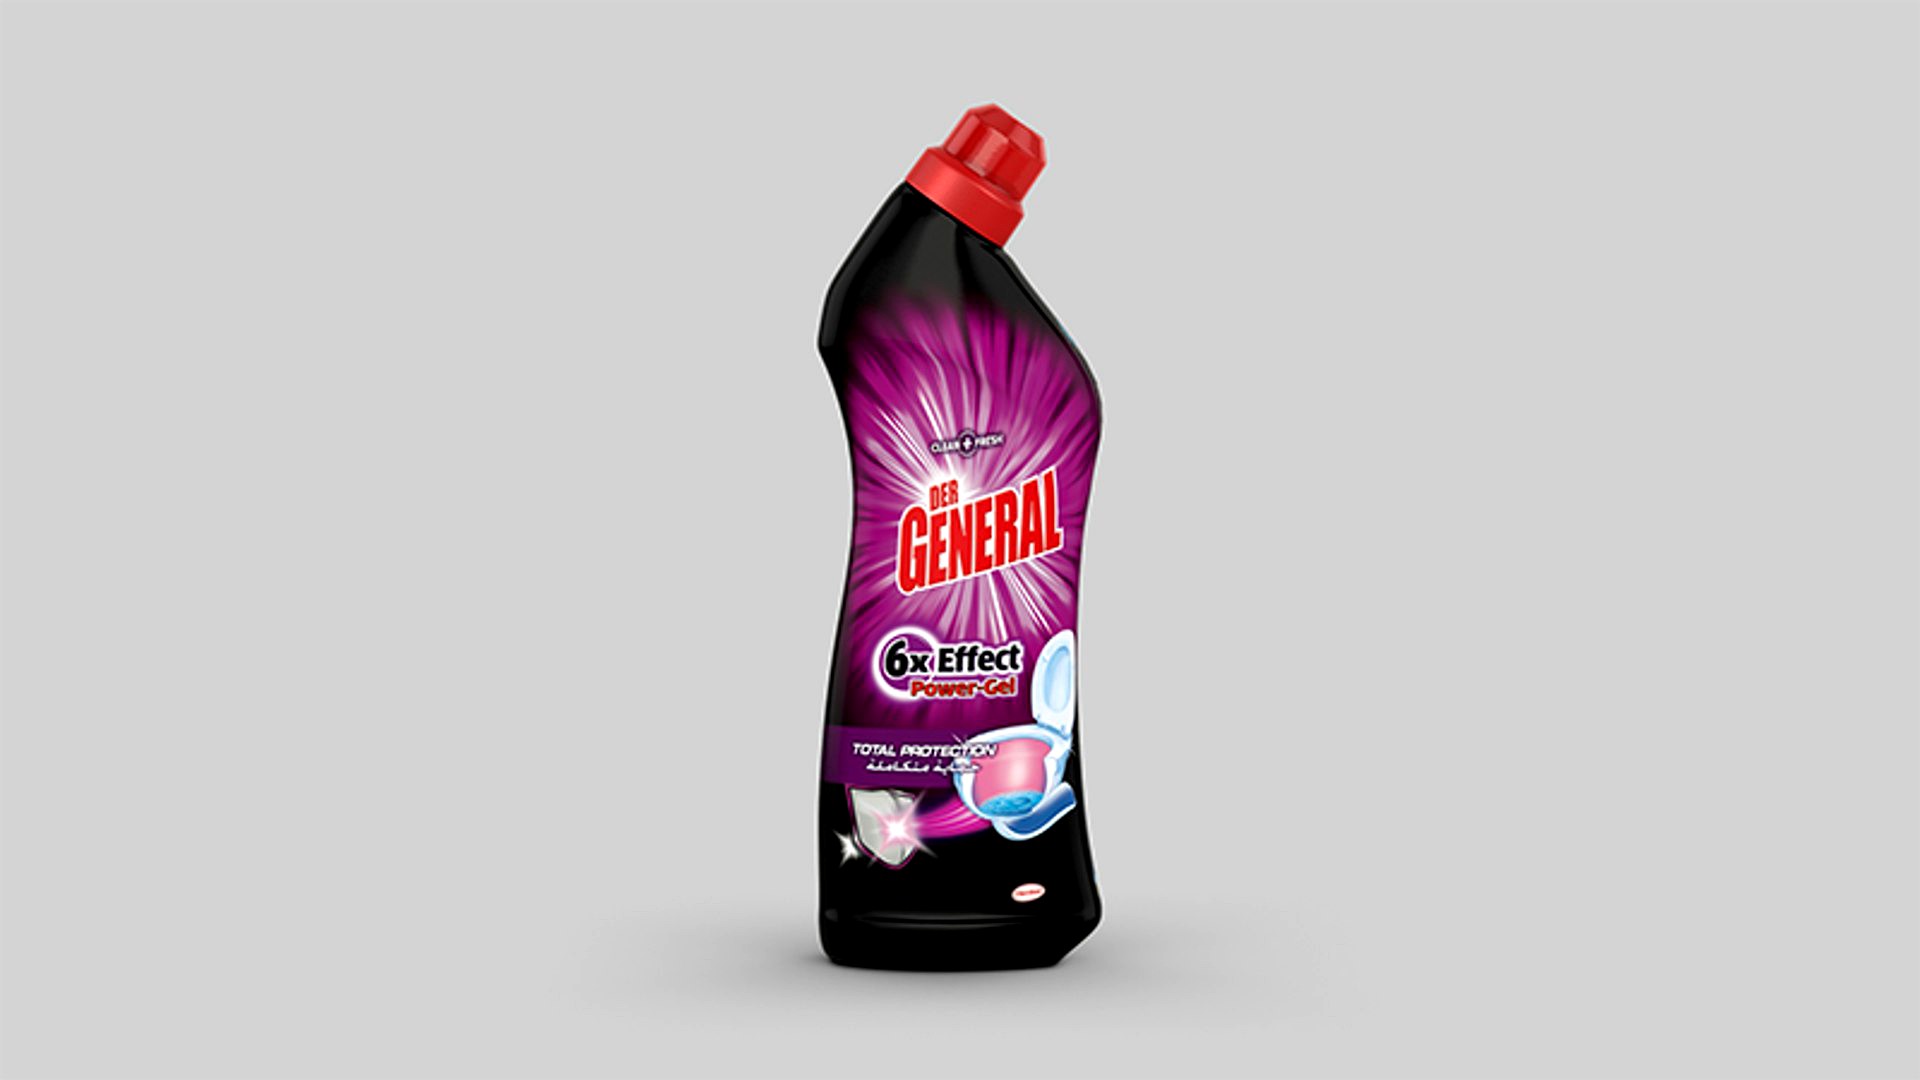 Detergent bottle for toilets - Der General